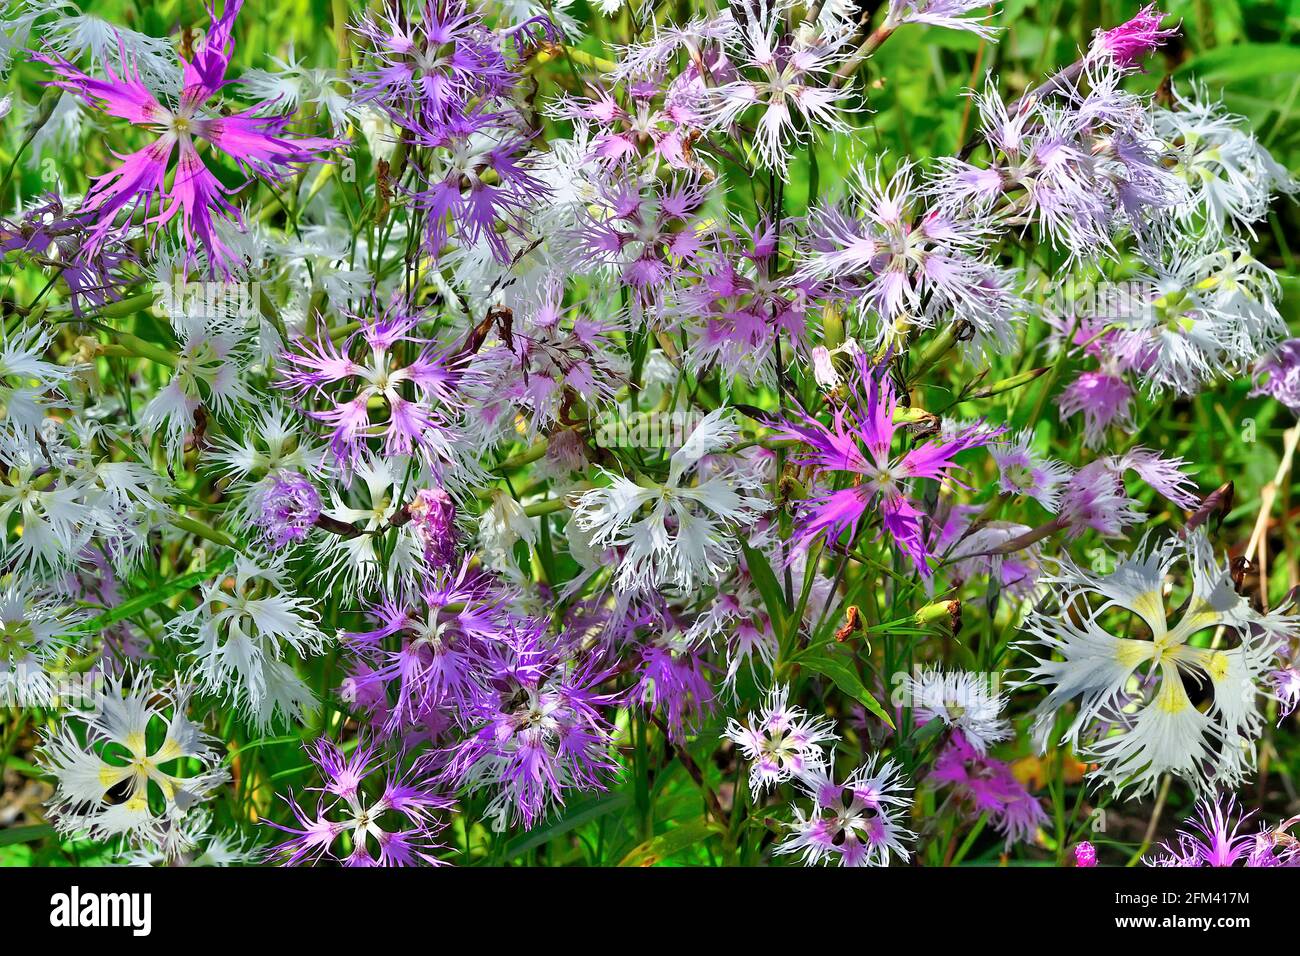 Sommer floralen Hintergrund - sanft zerbrechlich rosa, weiß und violett Blüten der Nelke Dianthus Superbus im Garten. Seltene, geschützte mehrjährige Herbaceou Stockfoto